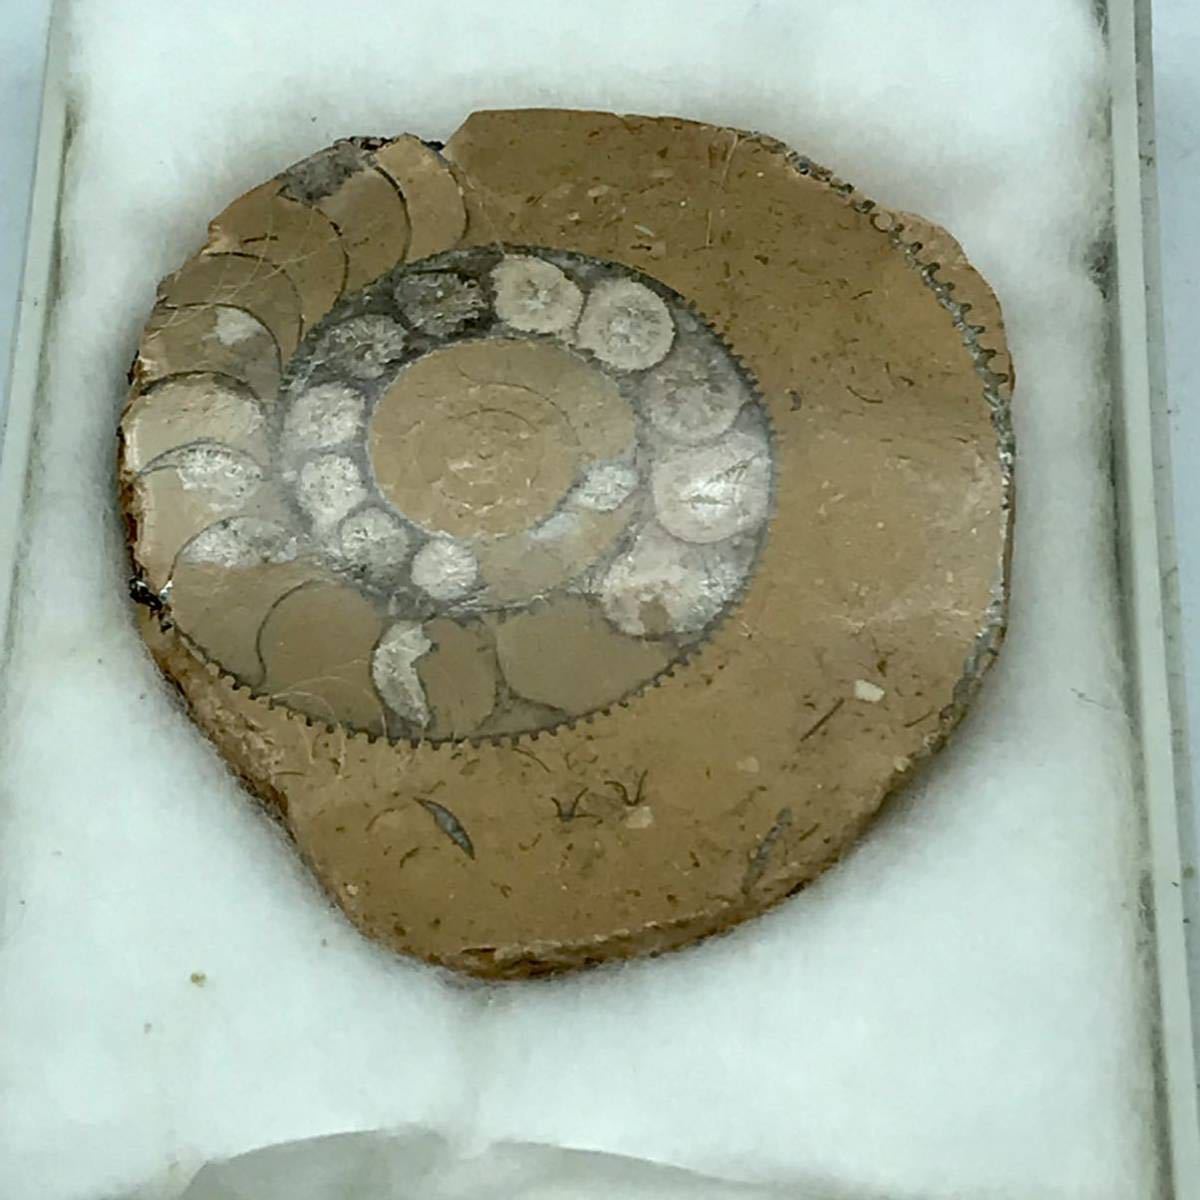 m1118504 アンモナイト 化石標本 ジュラ紀 なんたい動物 頭足類 1億8千万年前 貝 産地イギリス 動物化石 アンモナイトの断面 中古品_画像3